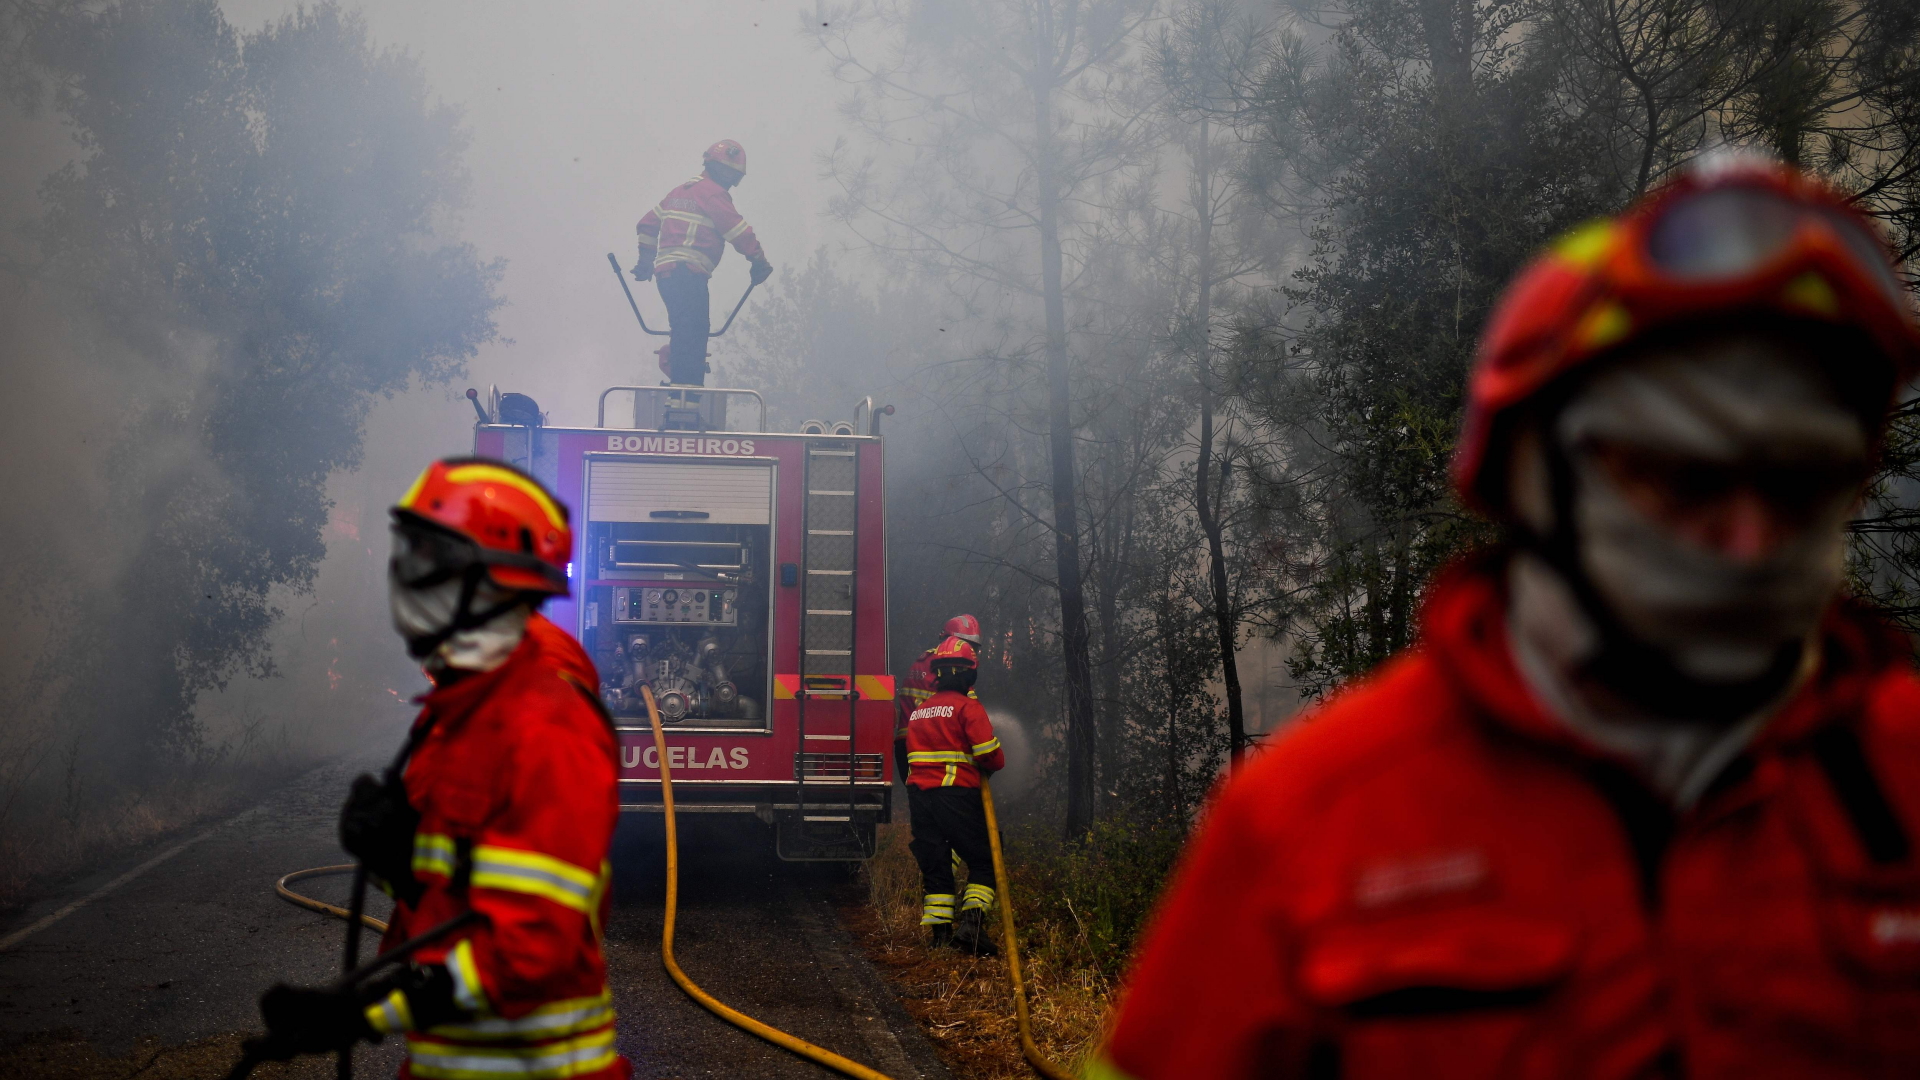 Feuerwehrmänner kämpfen im dichten Qualm gegen die Flammen. | AFP